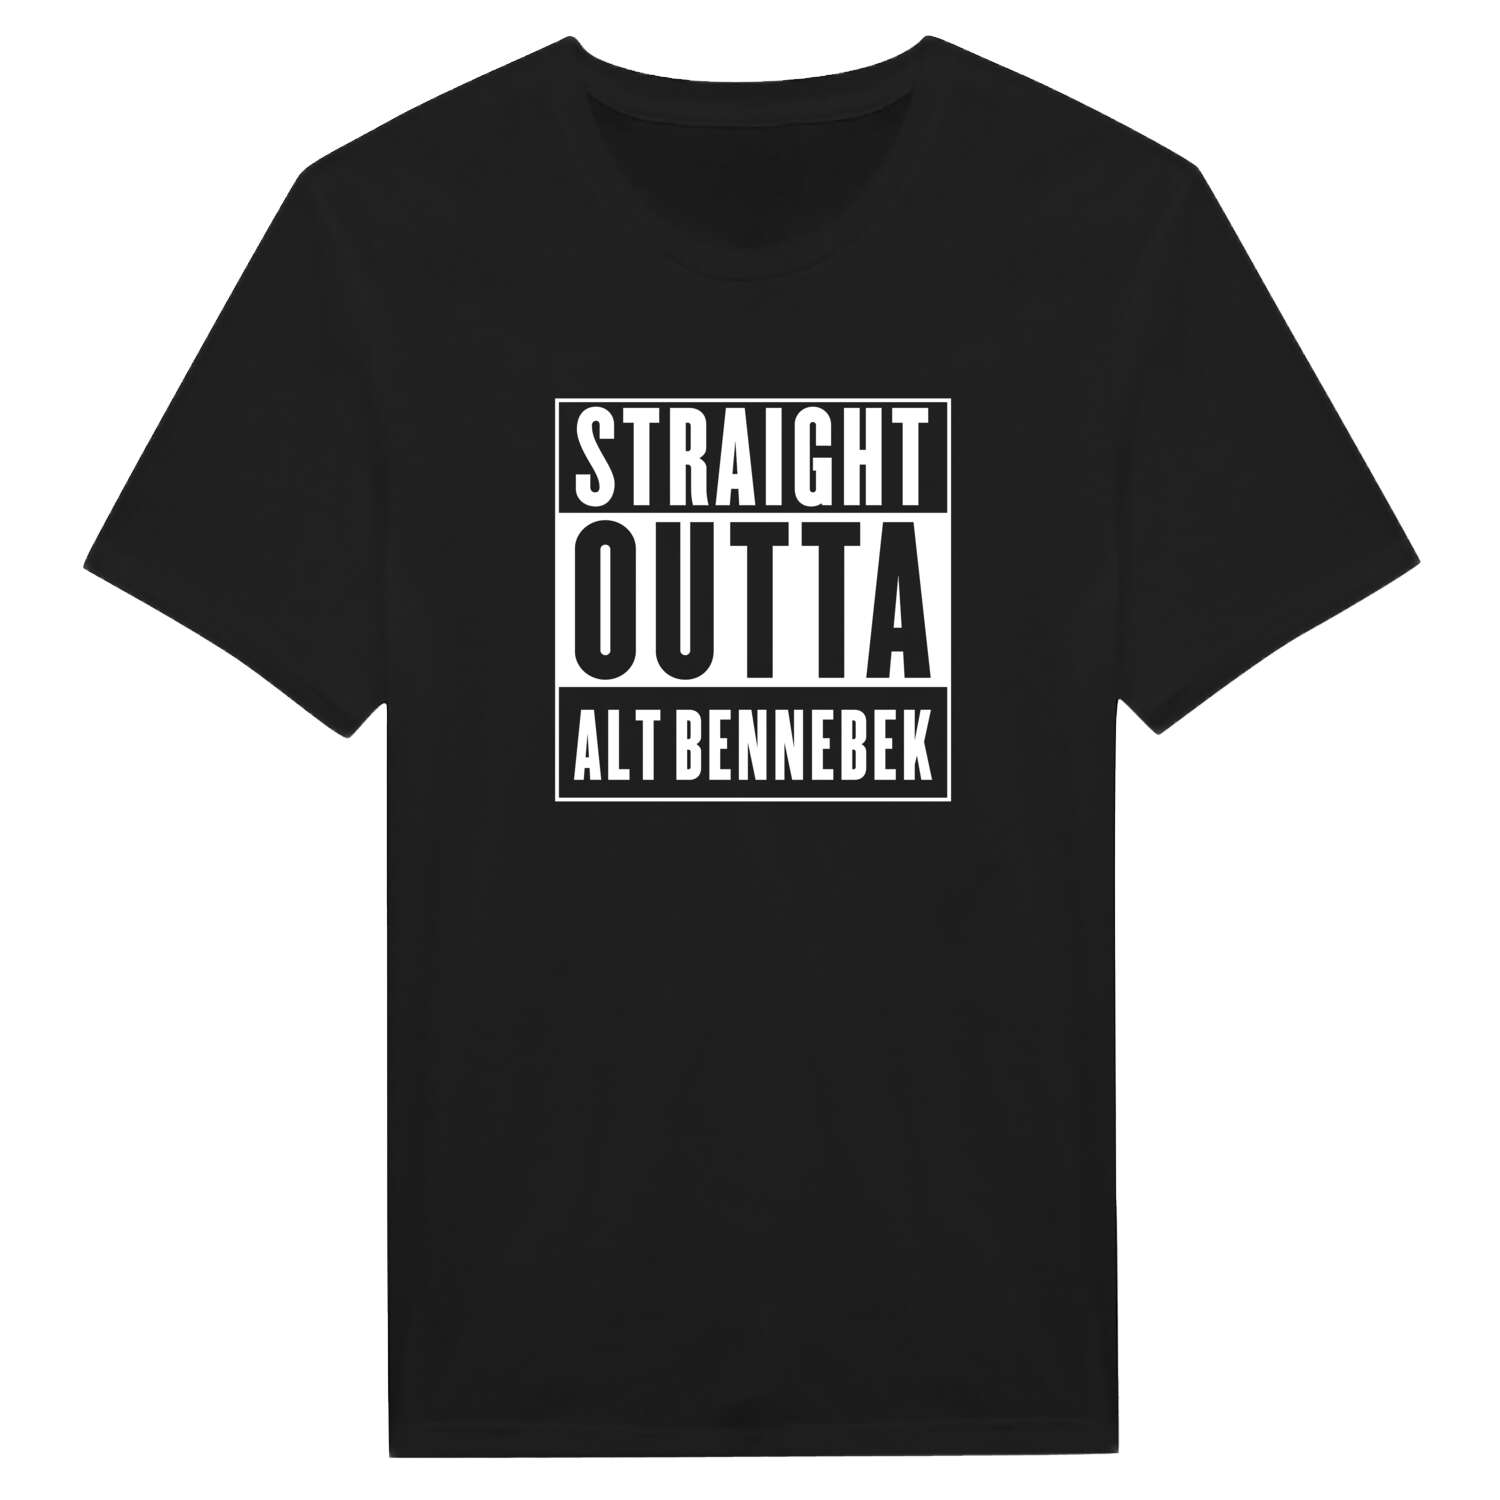 Alt Bennebek T-Shirt »Straight Outta«